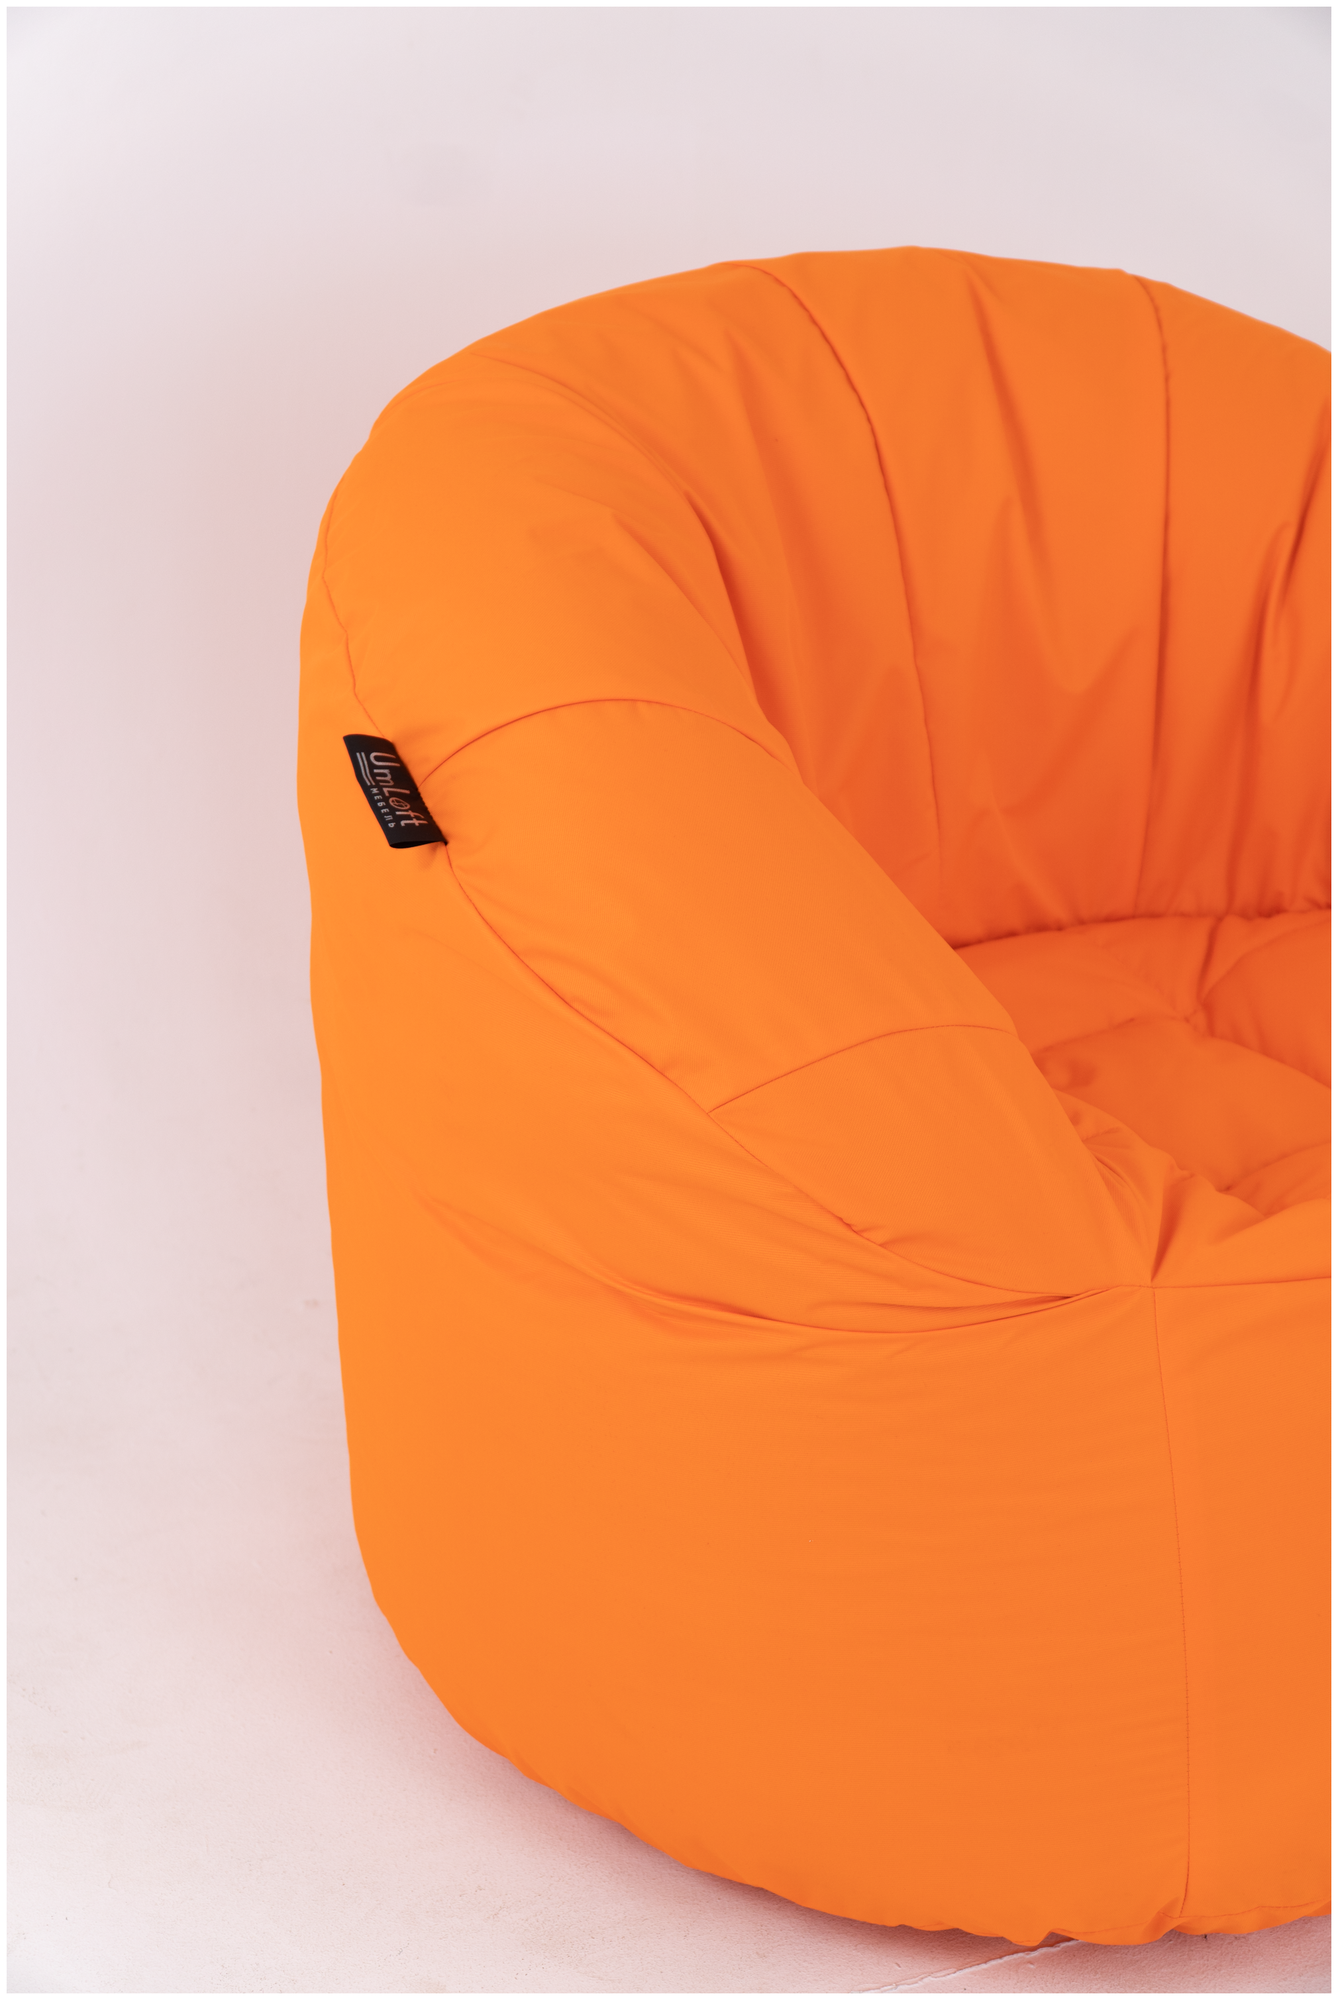 Кресло "Шелл", оранжевый, велюр (Puffdom пуф, кресло, бескаркасная мягкая мебель) - фотография № 2